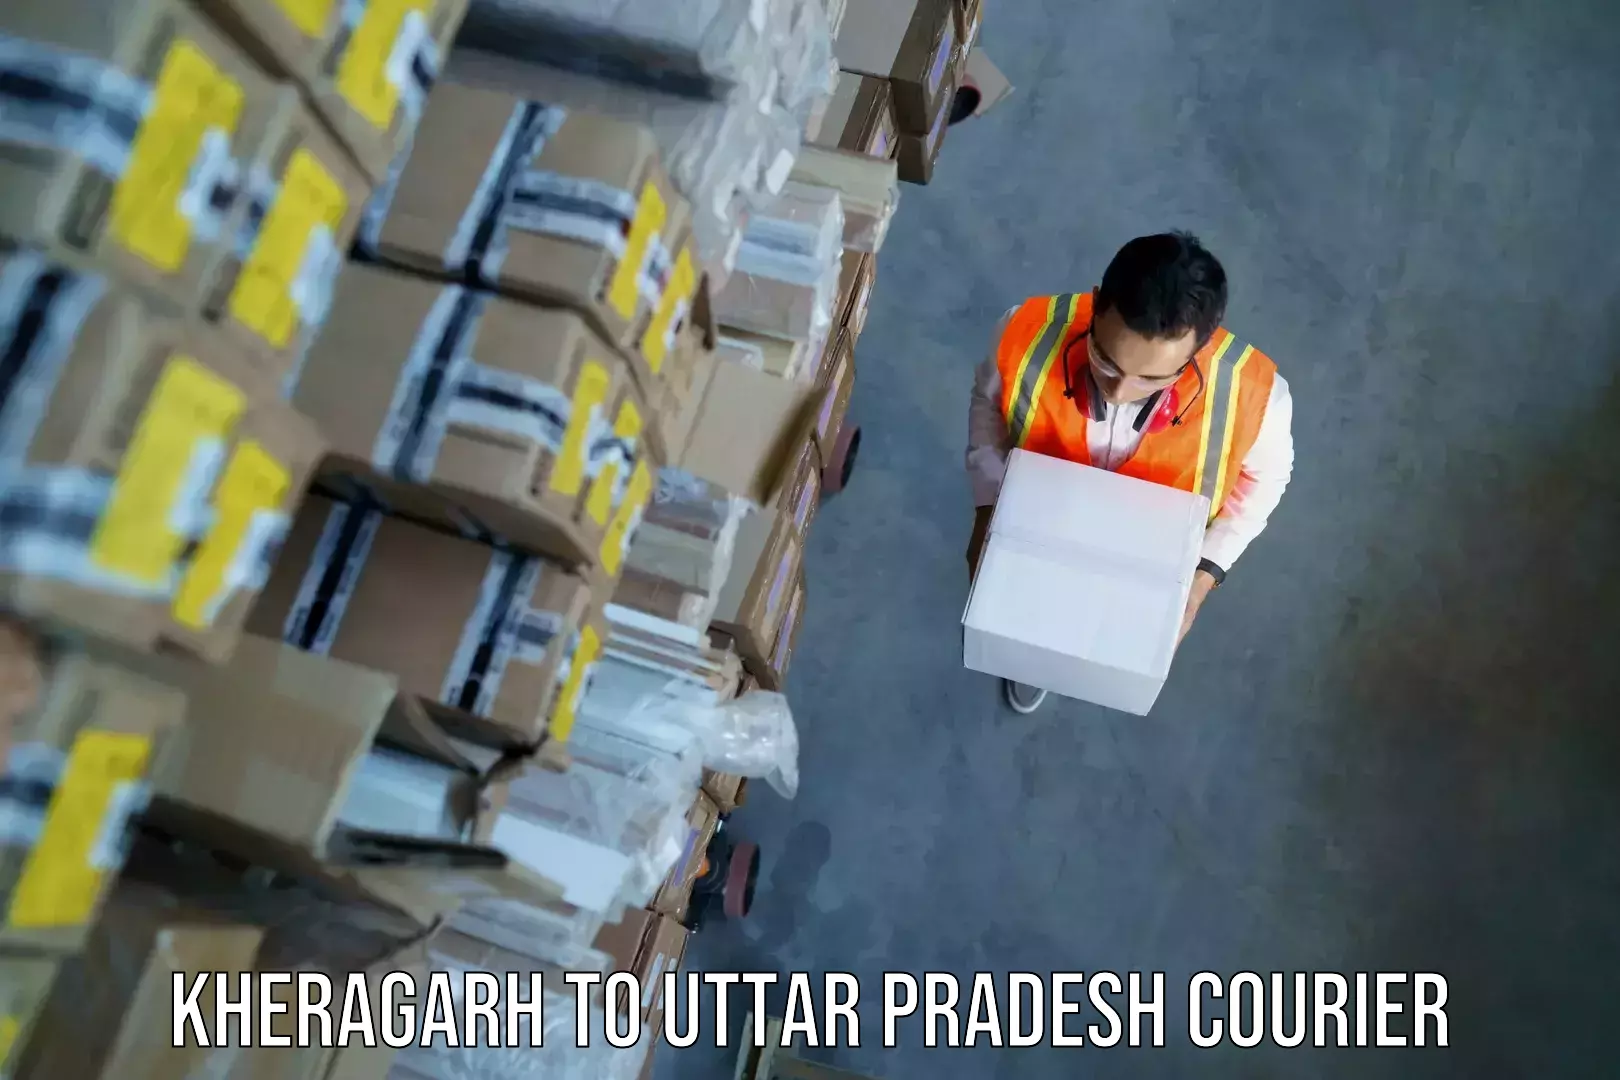 Luggage transport schedule Kheragarh to Dhaurahara